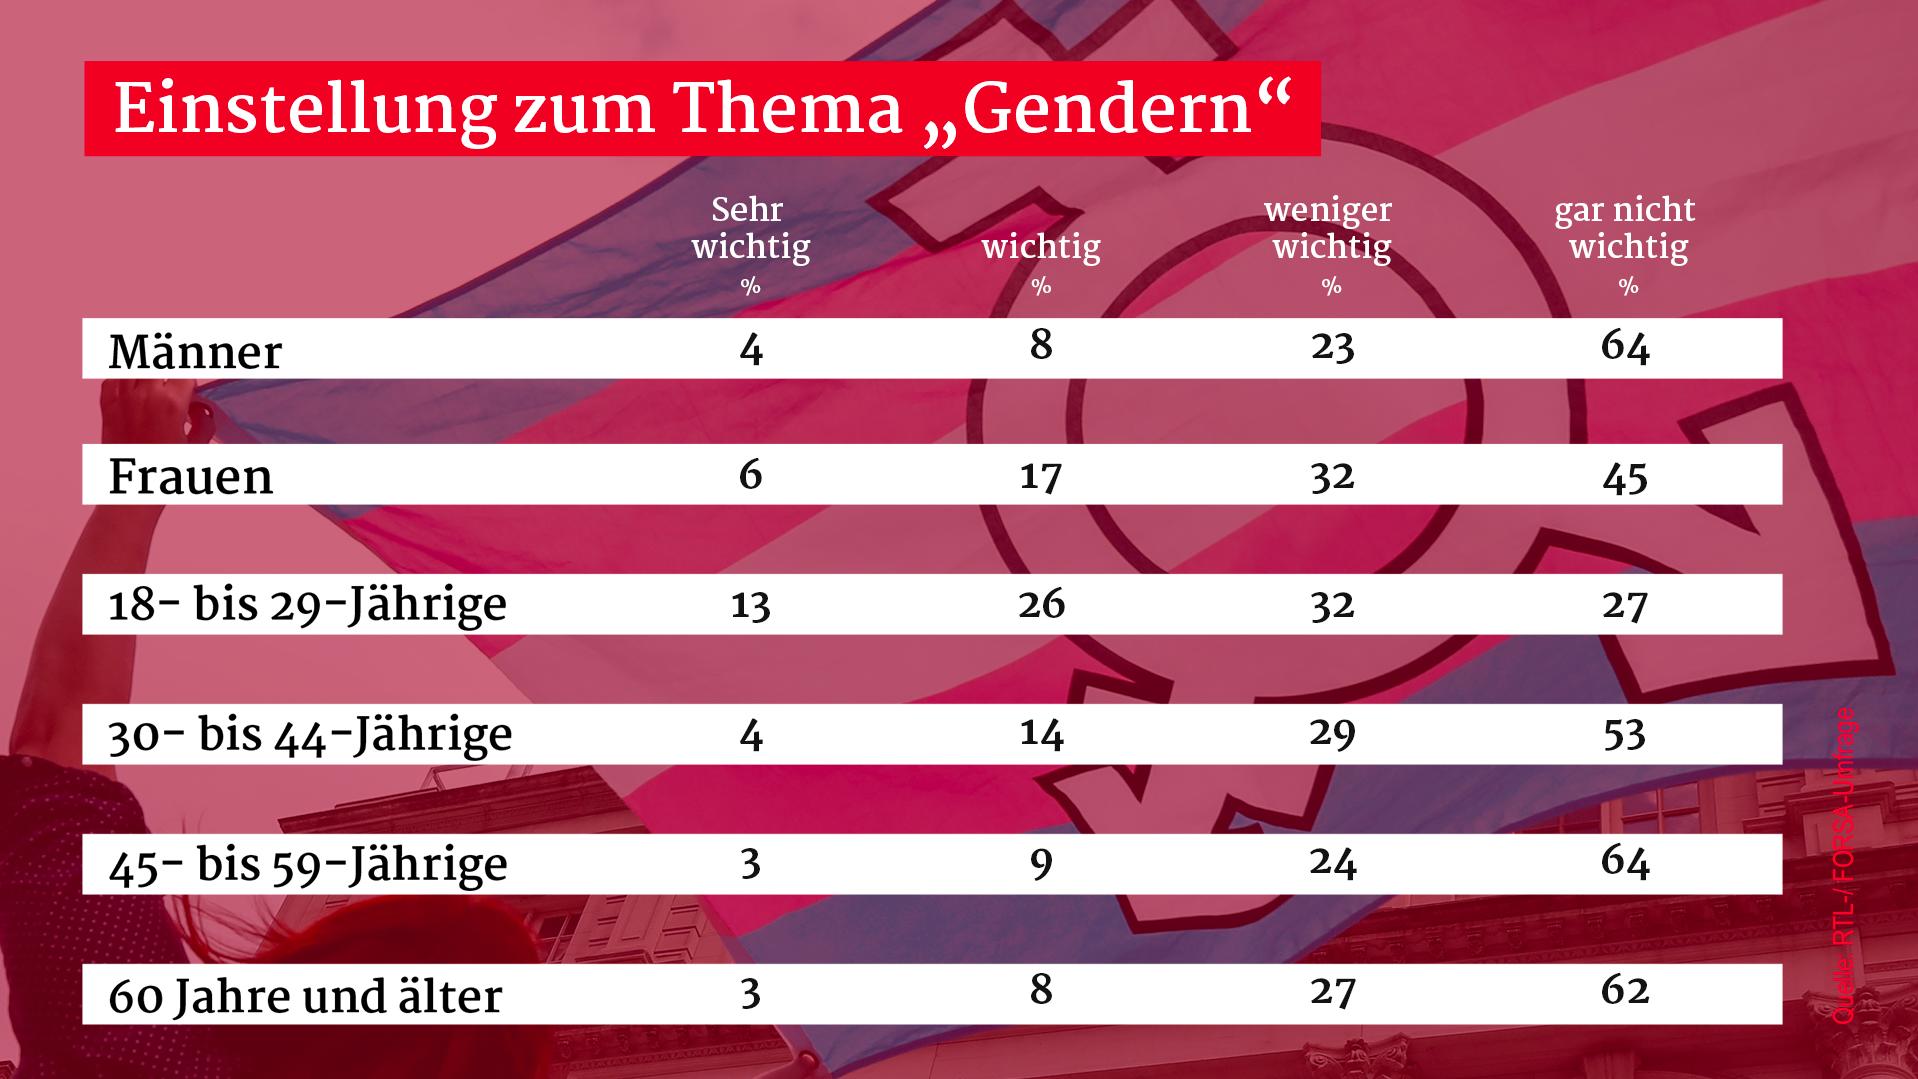 Ein Großteil der Deutschen empfindet Gendern nicht als wichtig.